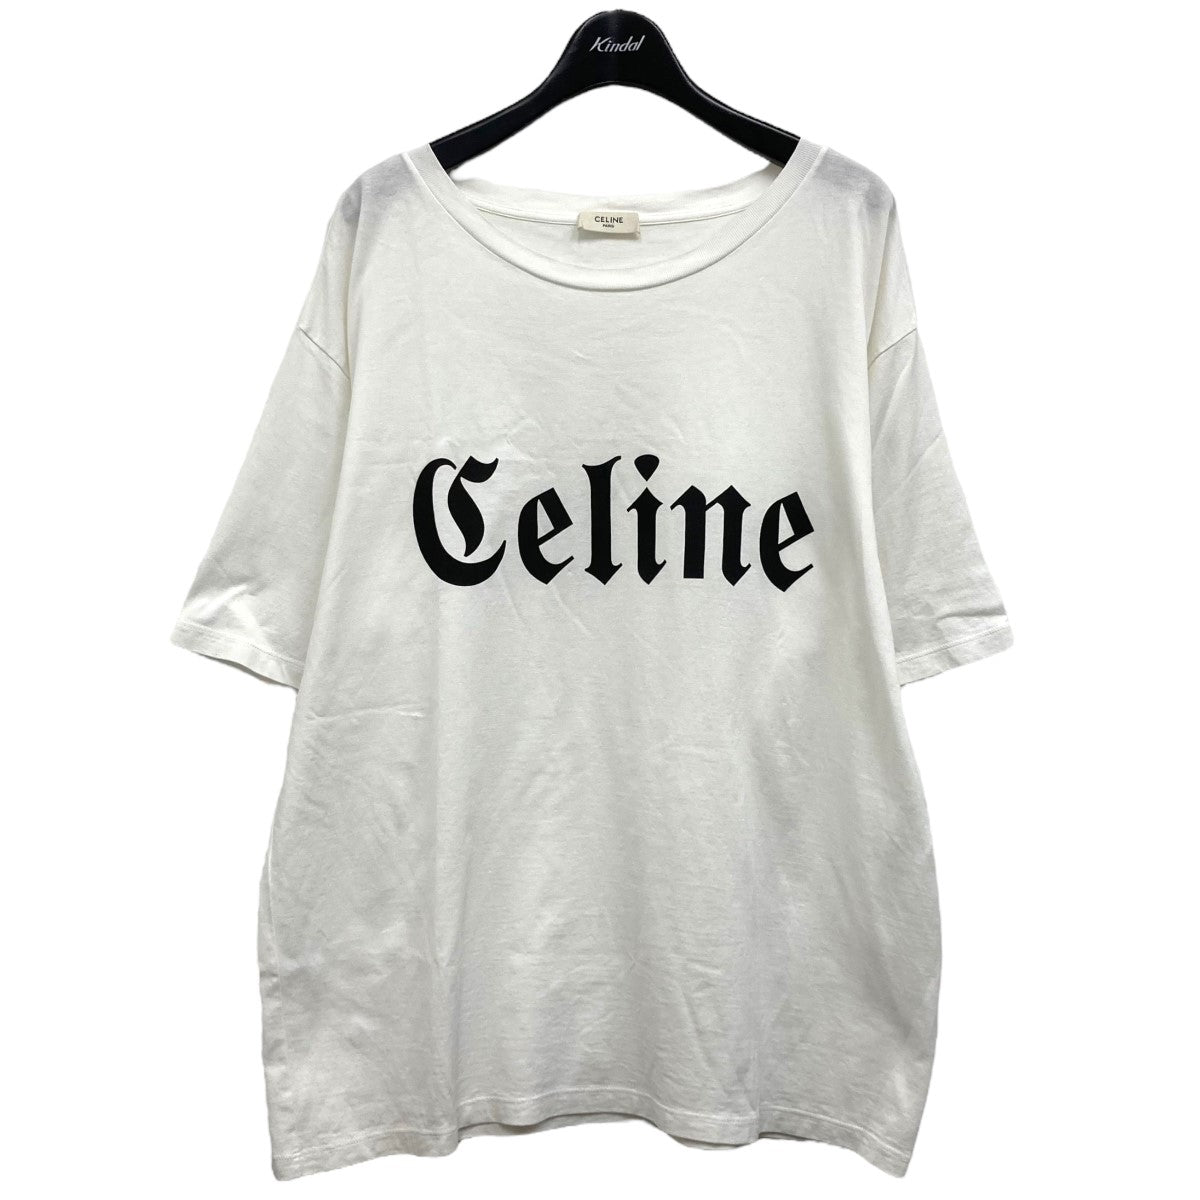 CELINE(セリーヌ) ゴシックロゴTシャツ 2X37A671Q ホワイト サイズ 16 